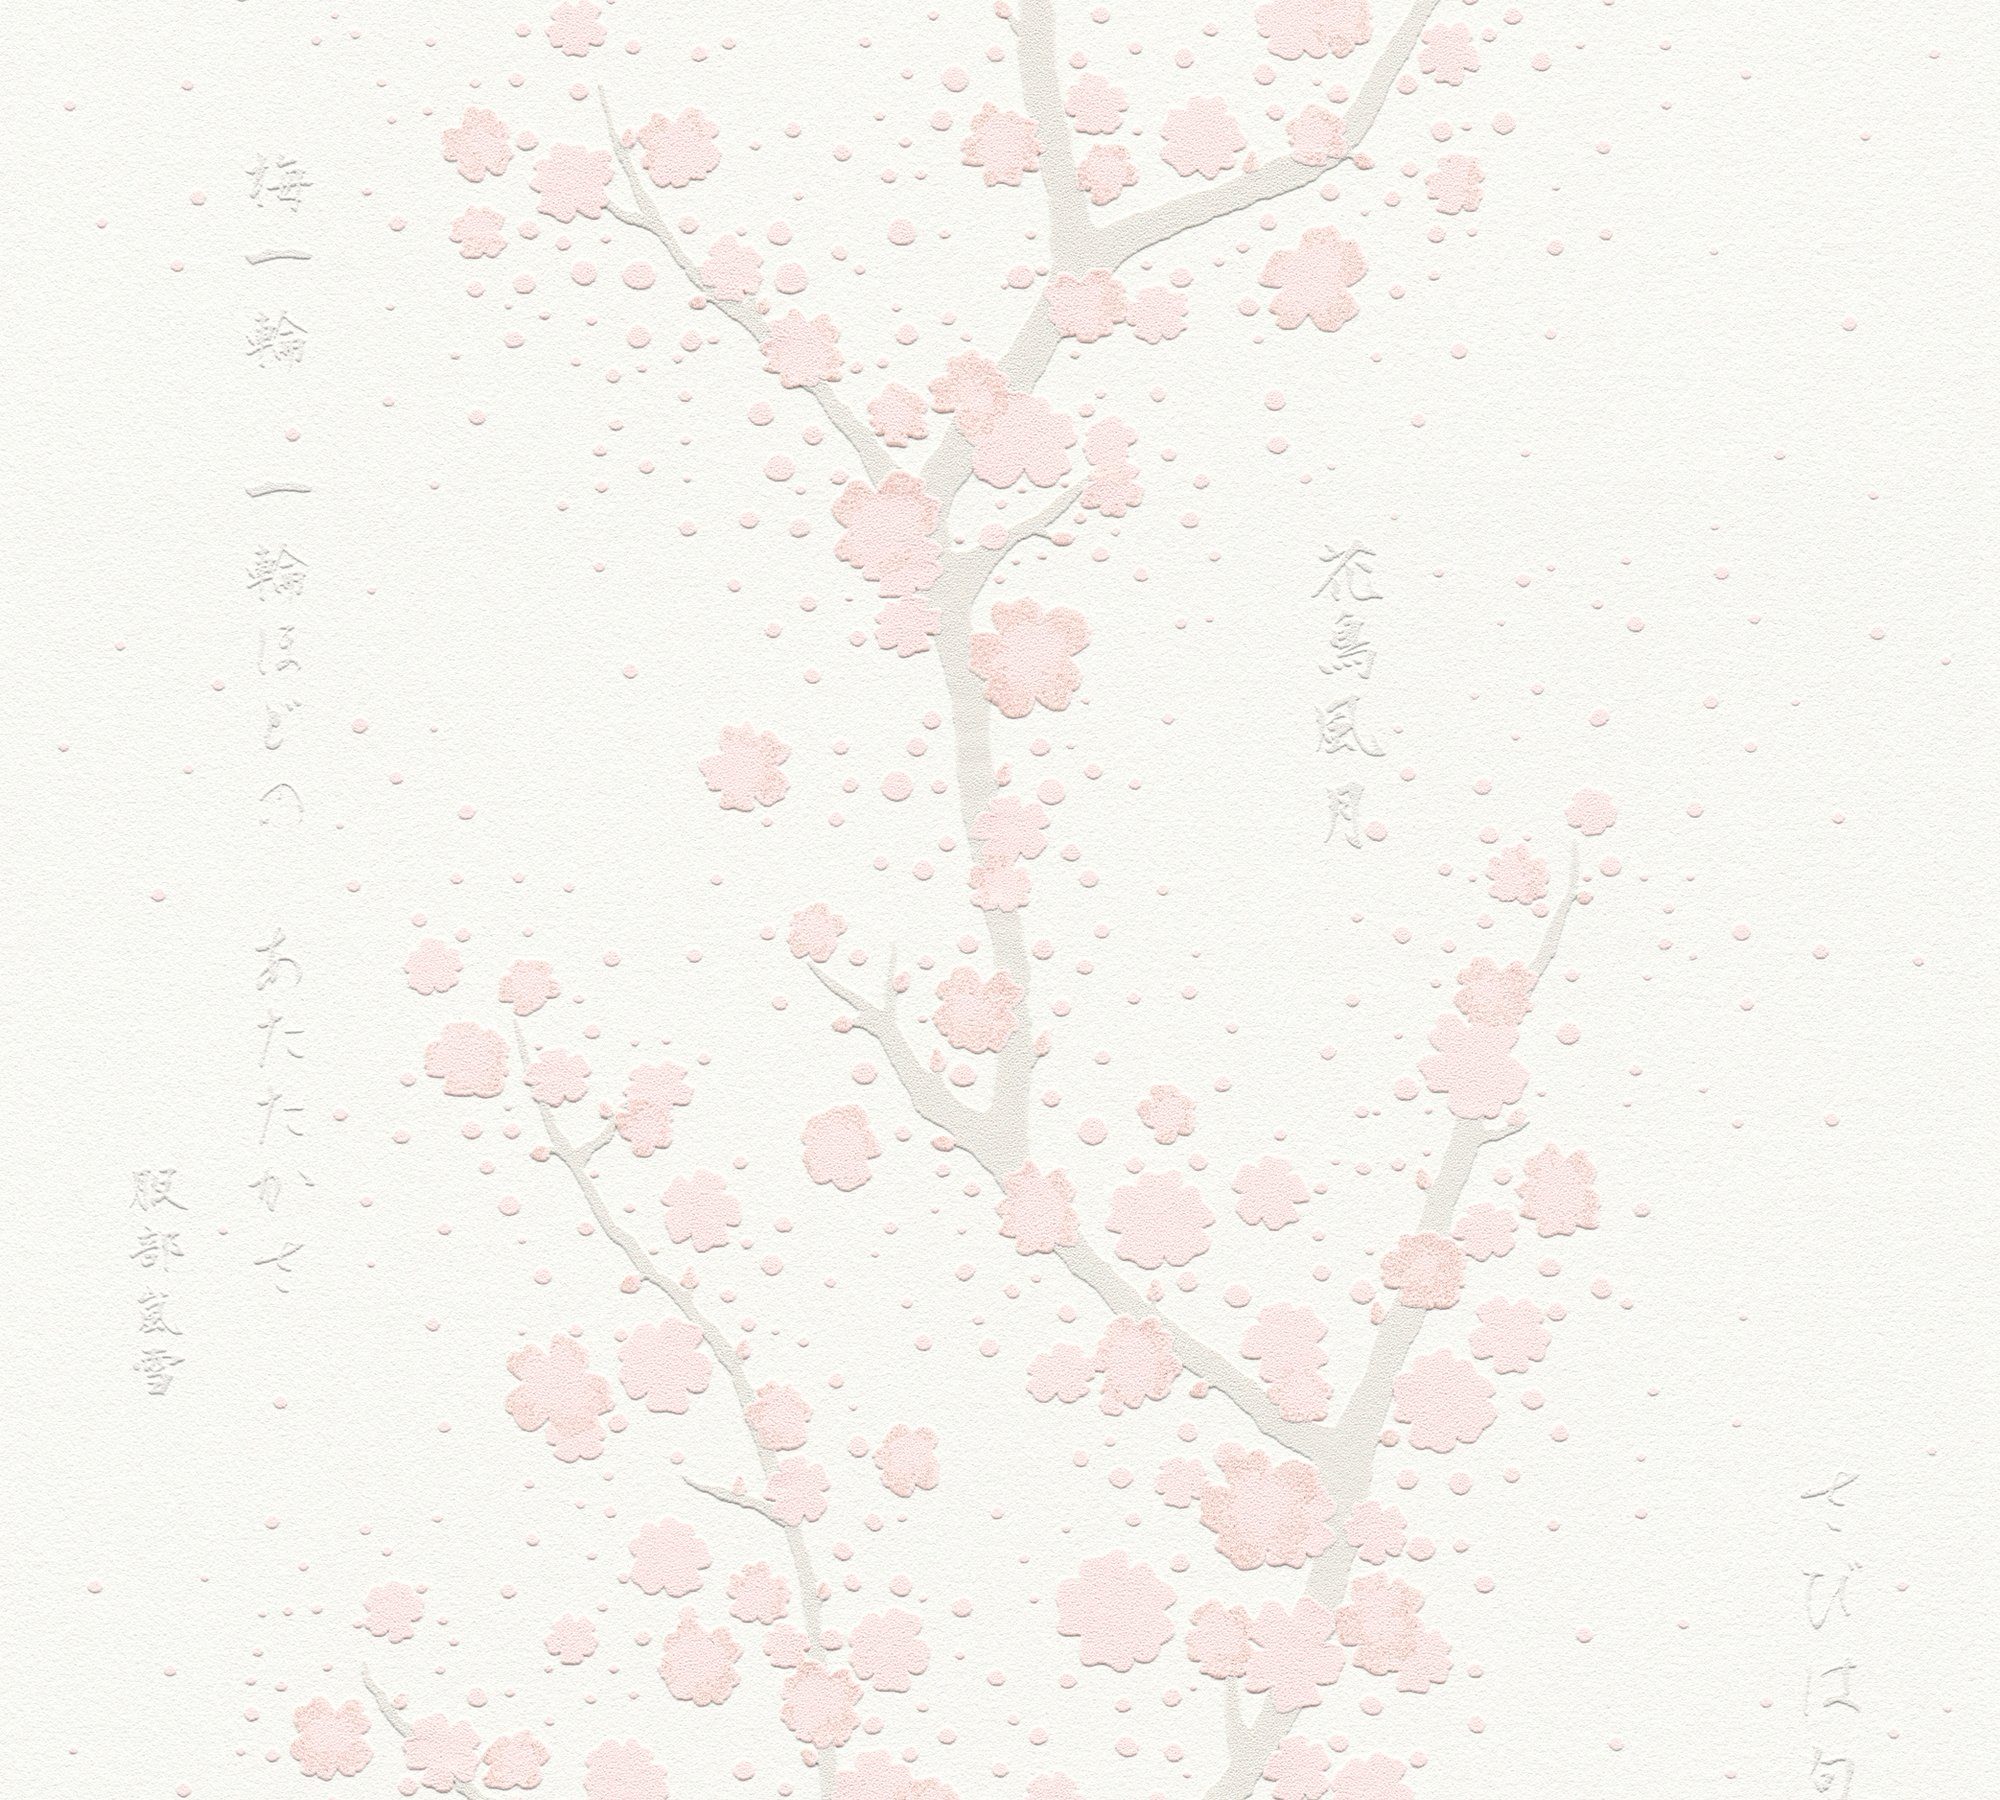 Tapete Schrift, Asian Fusion, asiatisch, Japanisch mit Vliestapete weiß/rosa/hellgrau Blumentapete Création floral, A.S. aufgeschäumt,